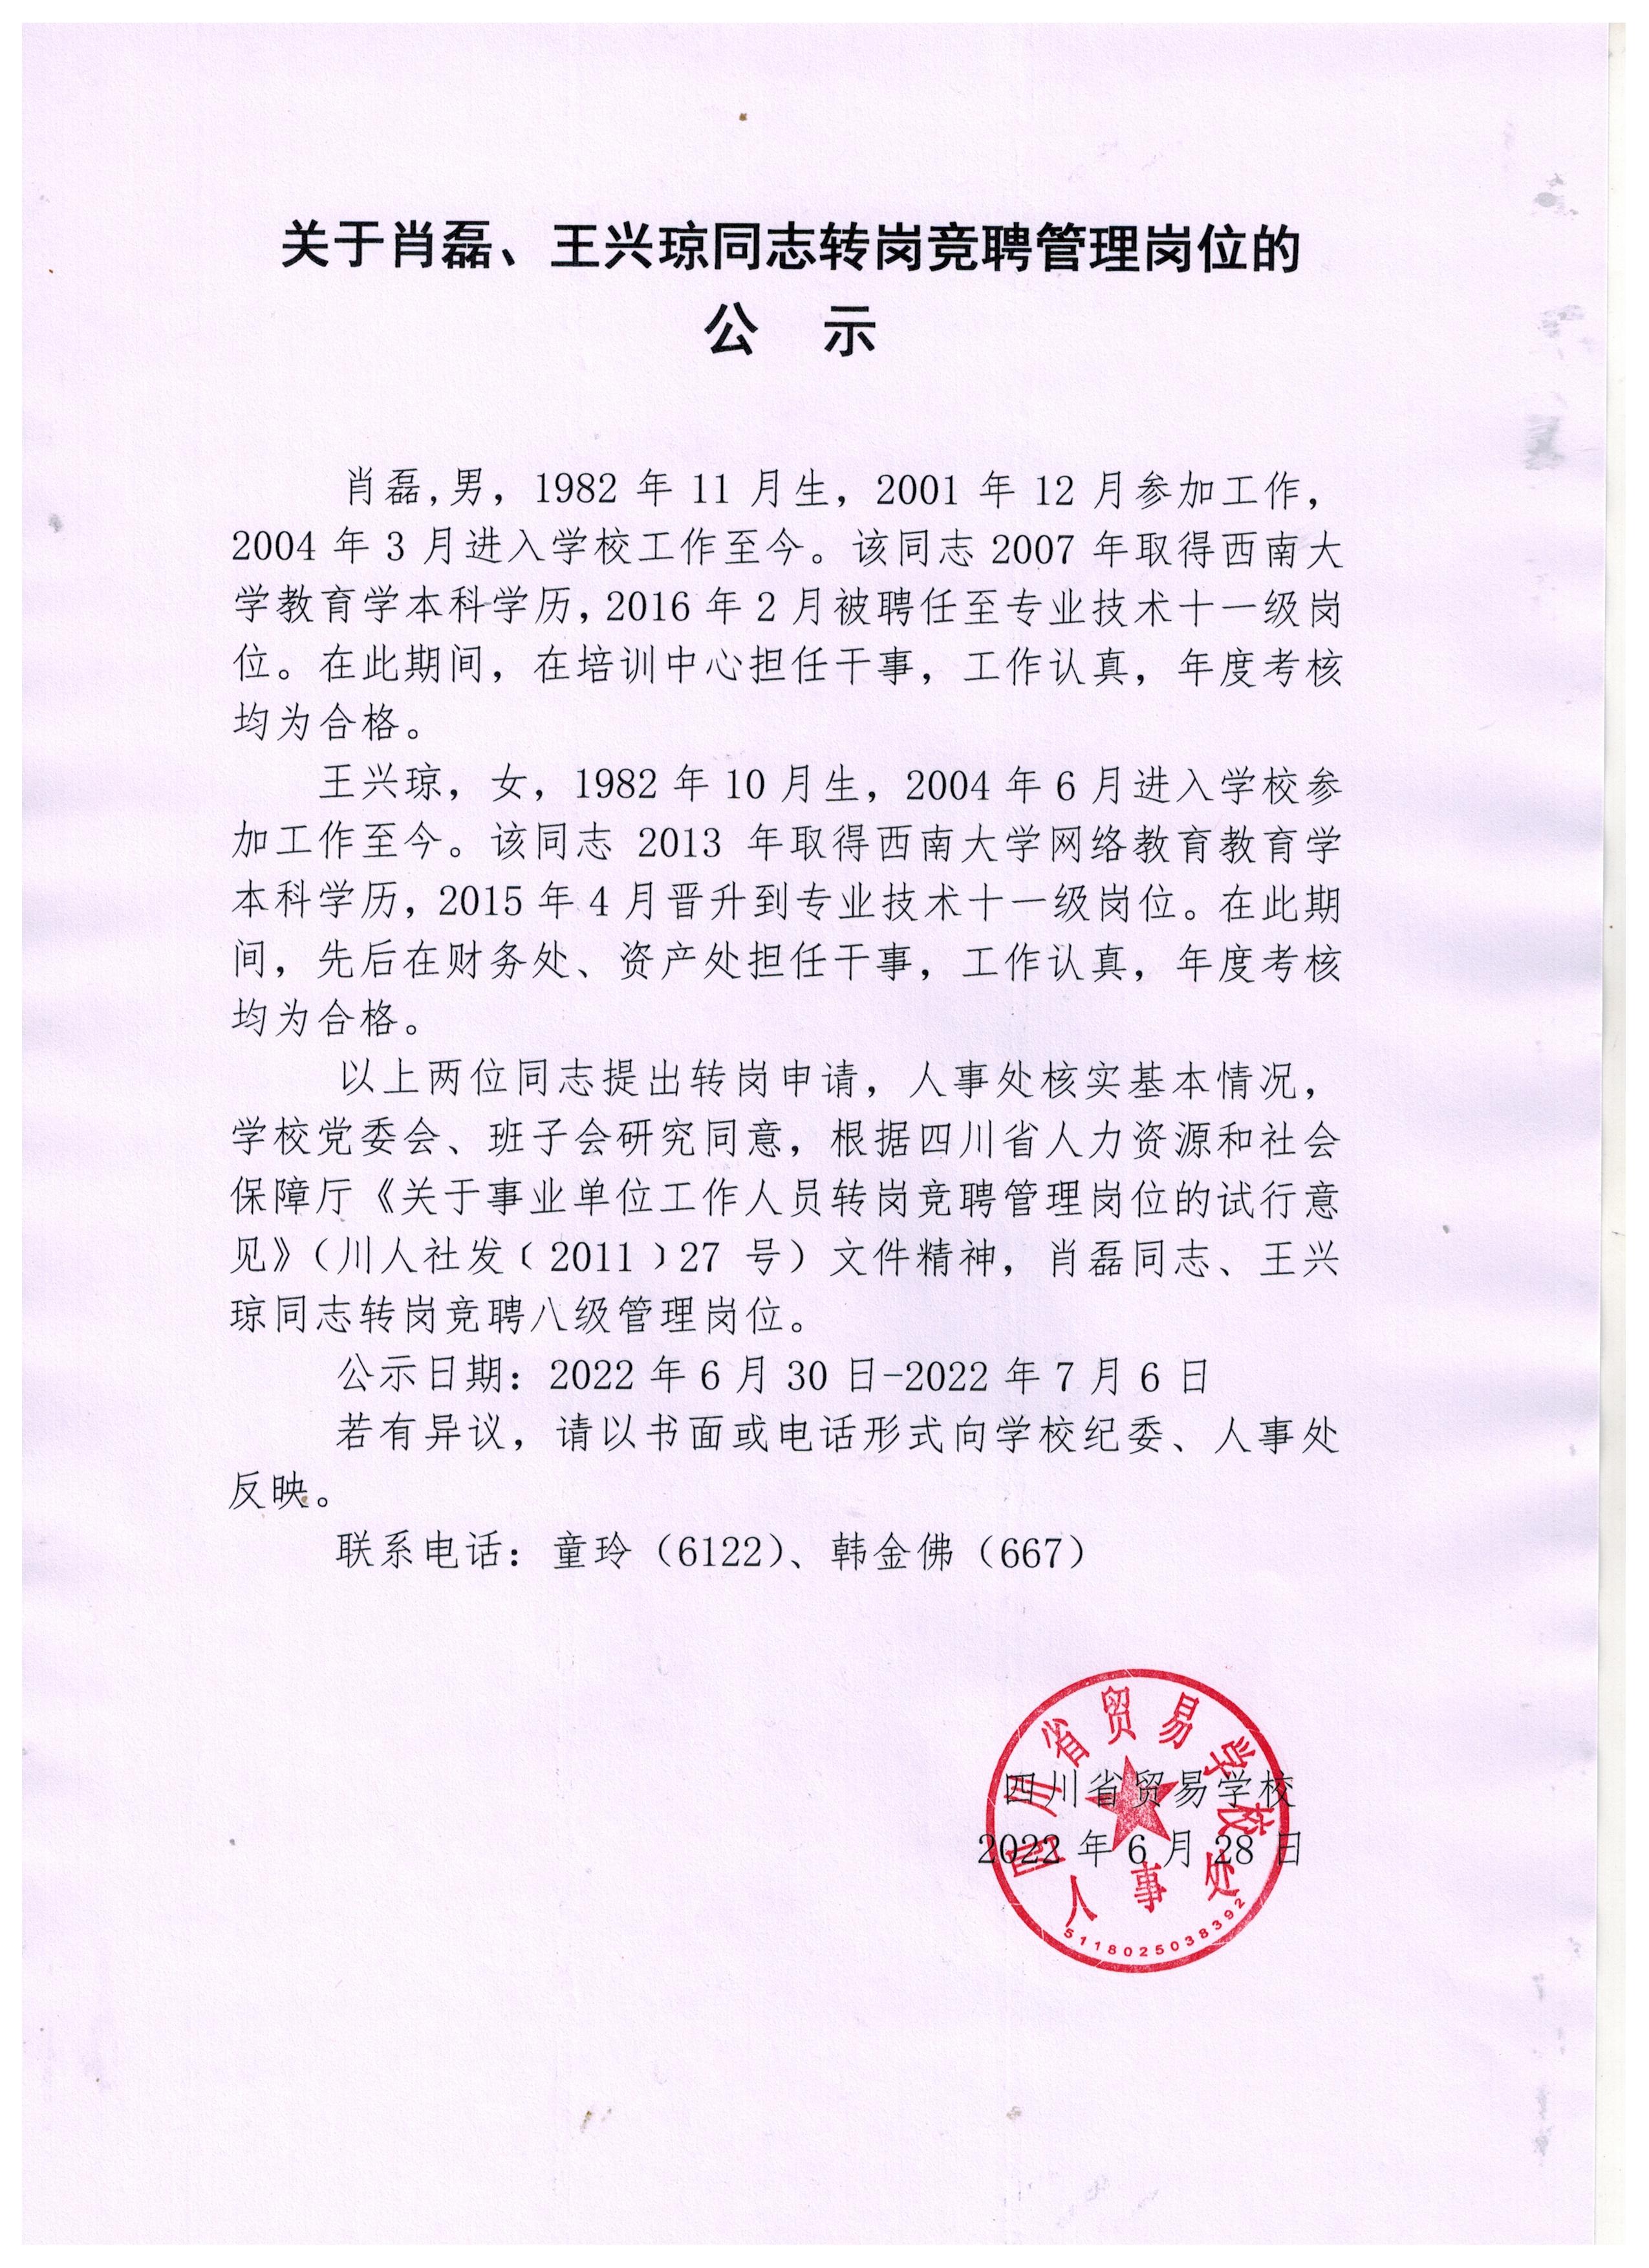 关于肖磊、王兴琼同志转岗竞聘管理岗位的公示